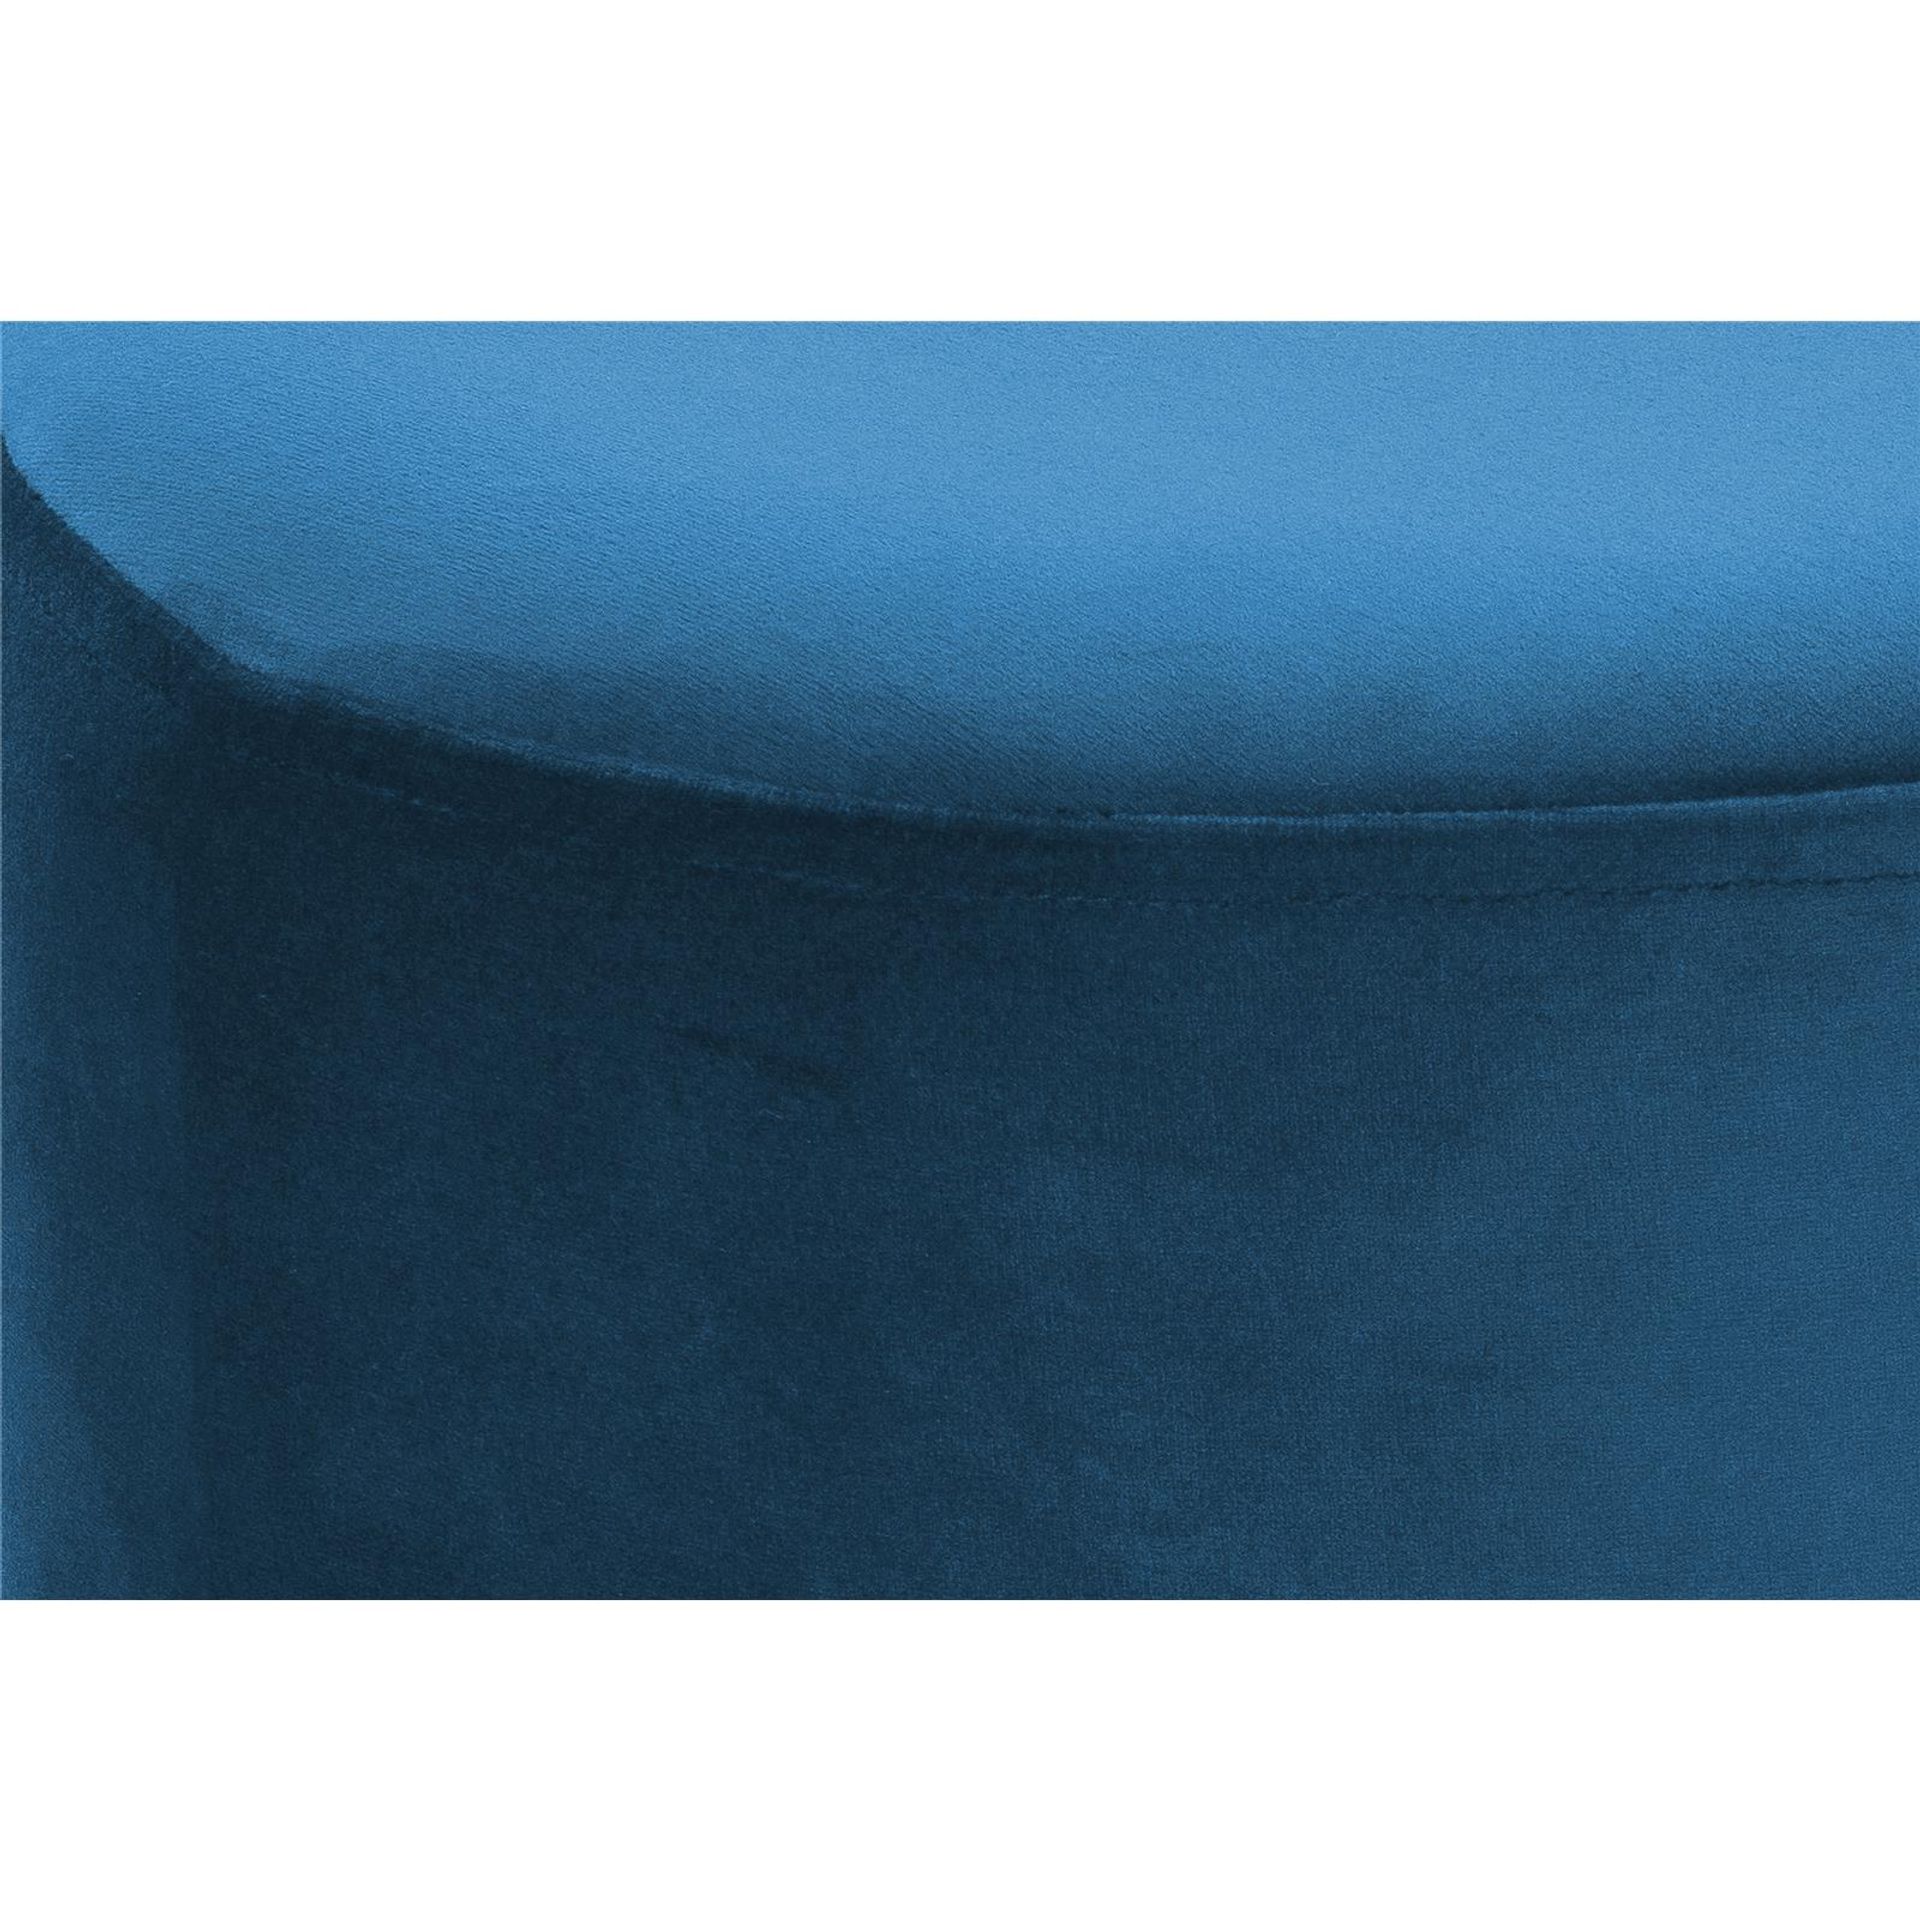 Hocker Nano 110 Blau - 35 cm (L) x 35 cm (B) x 42 cm (H)